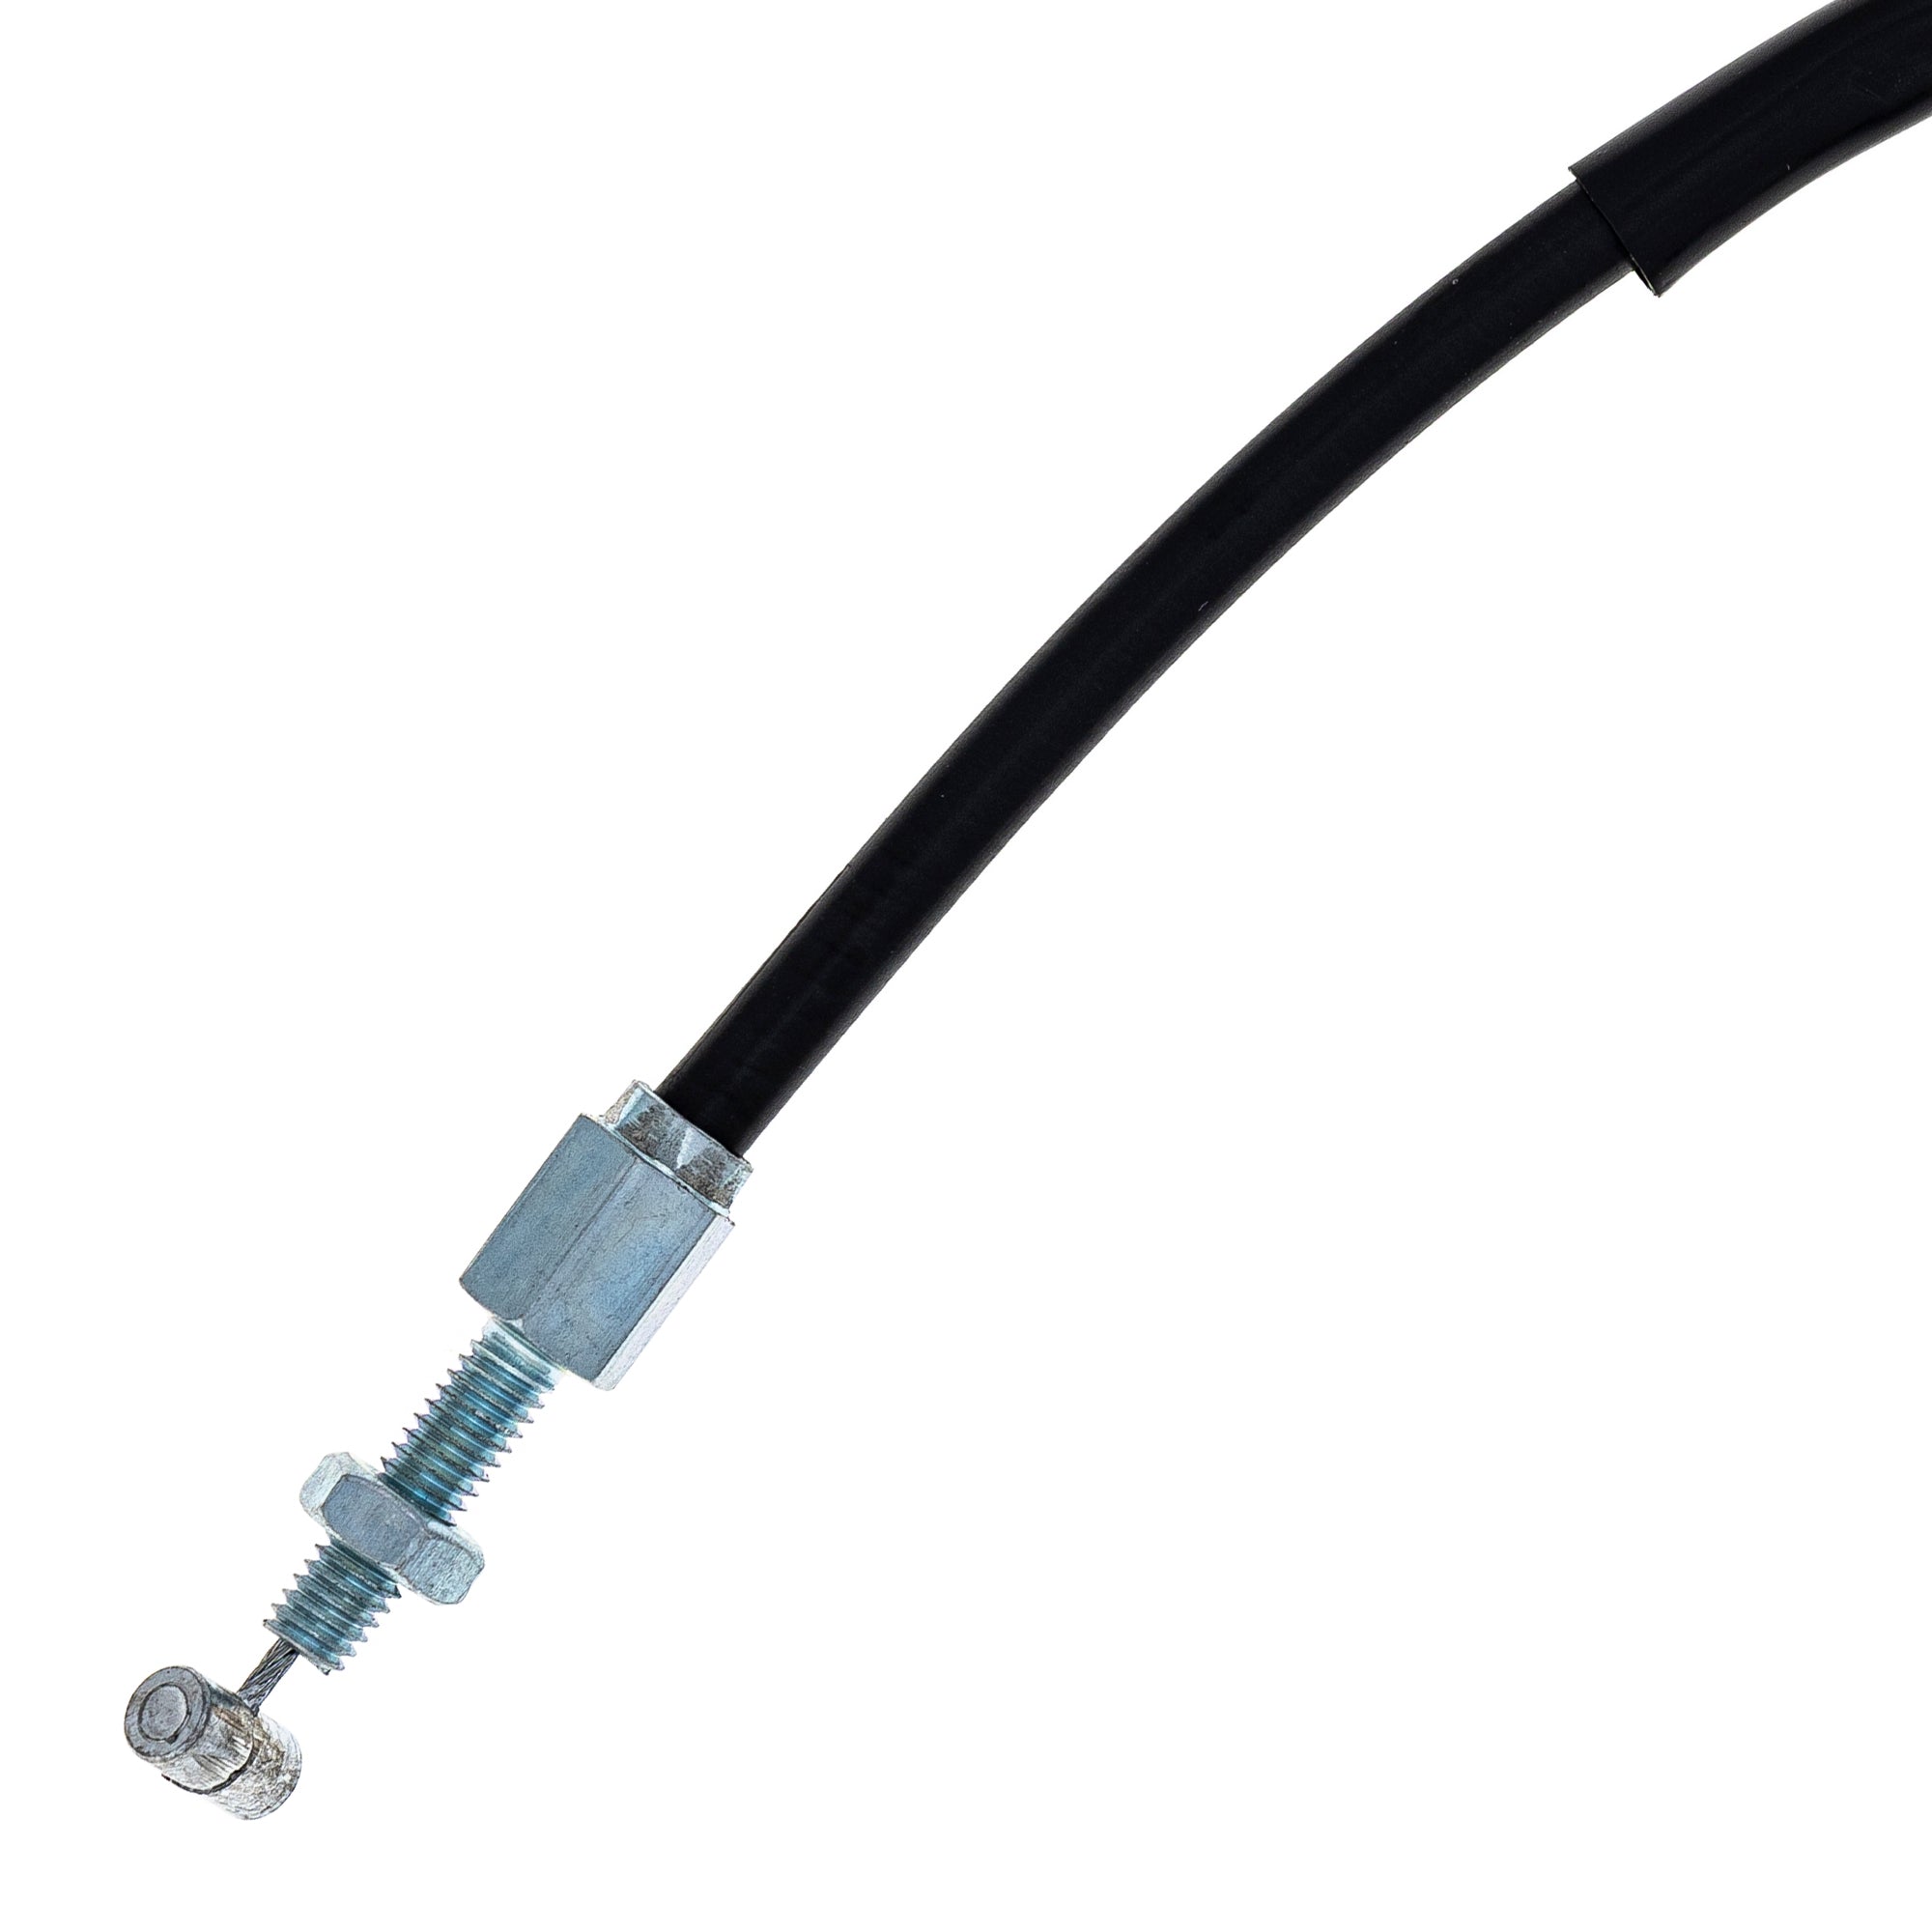 NICHE Throttle Cable 17910-MT8-004 17910-MT8-000